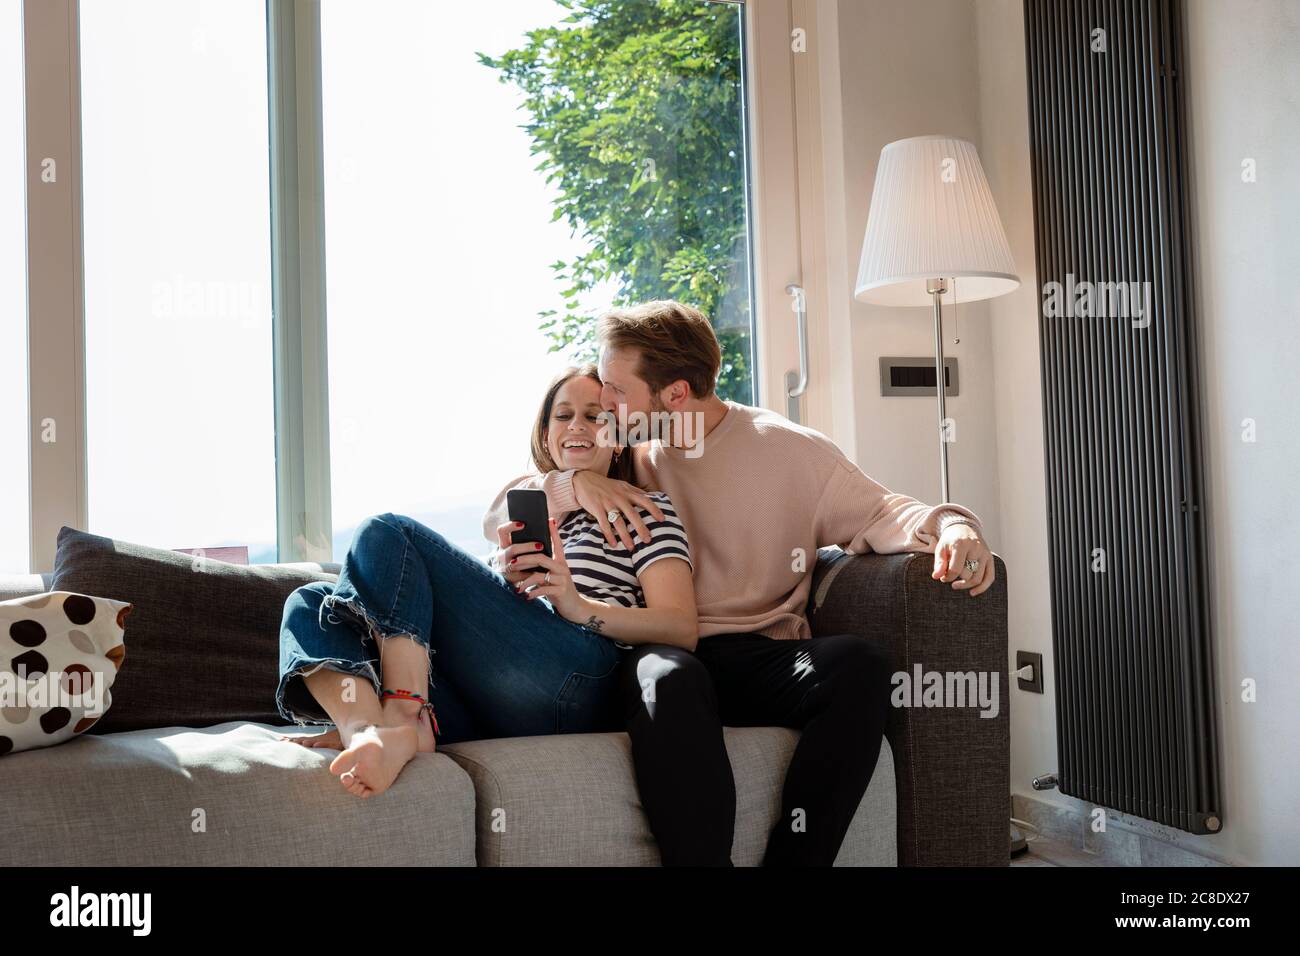 Homme embrassant la femme tout en se relaxant sur le canapé contre la fenêtre dedans salle de séjour à la maison Banque D'Images